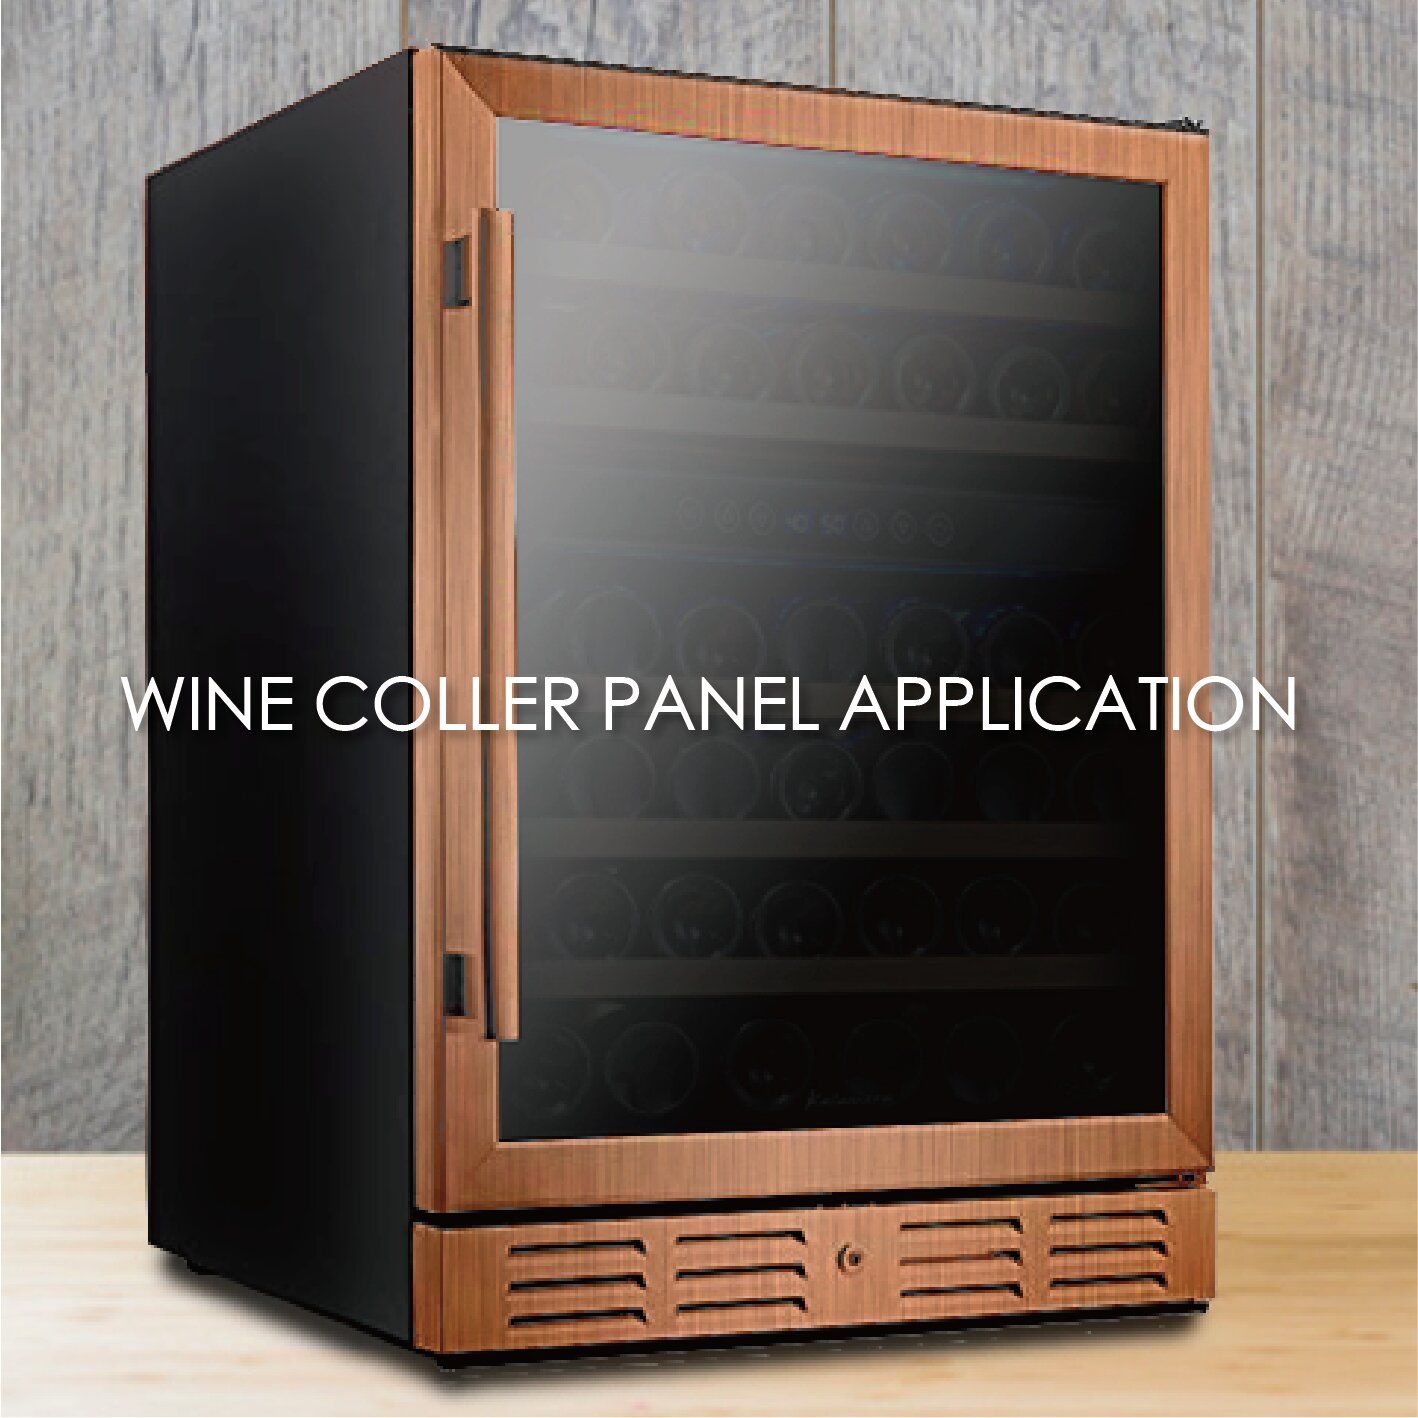 استخدام المعدن المغلف بحبيبات الخشب لصنع لوحات مبرد النبيذ يمكن أن يزيد من الجمالية والمتانة